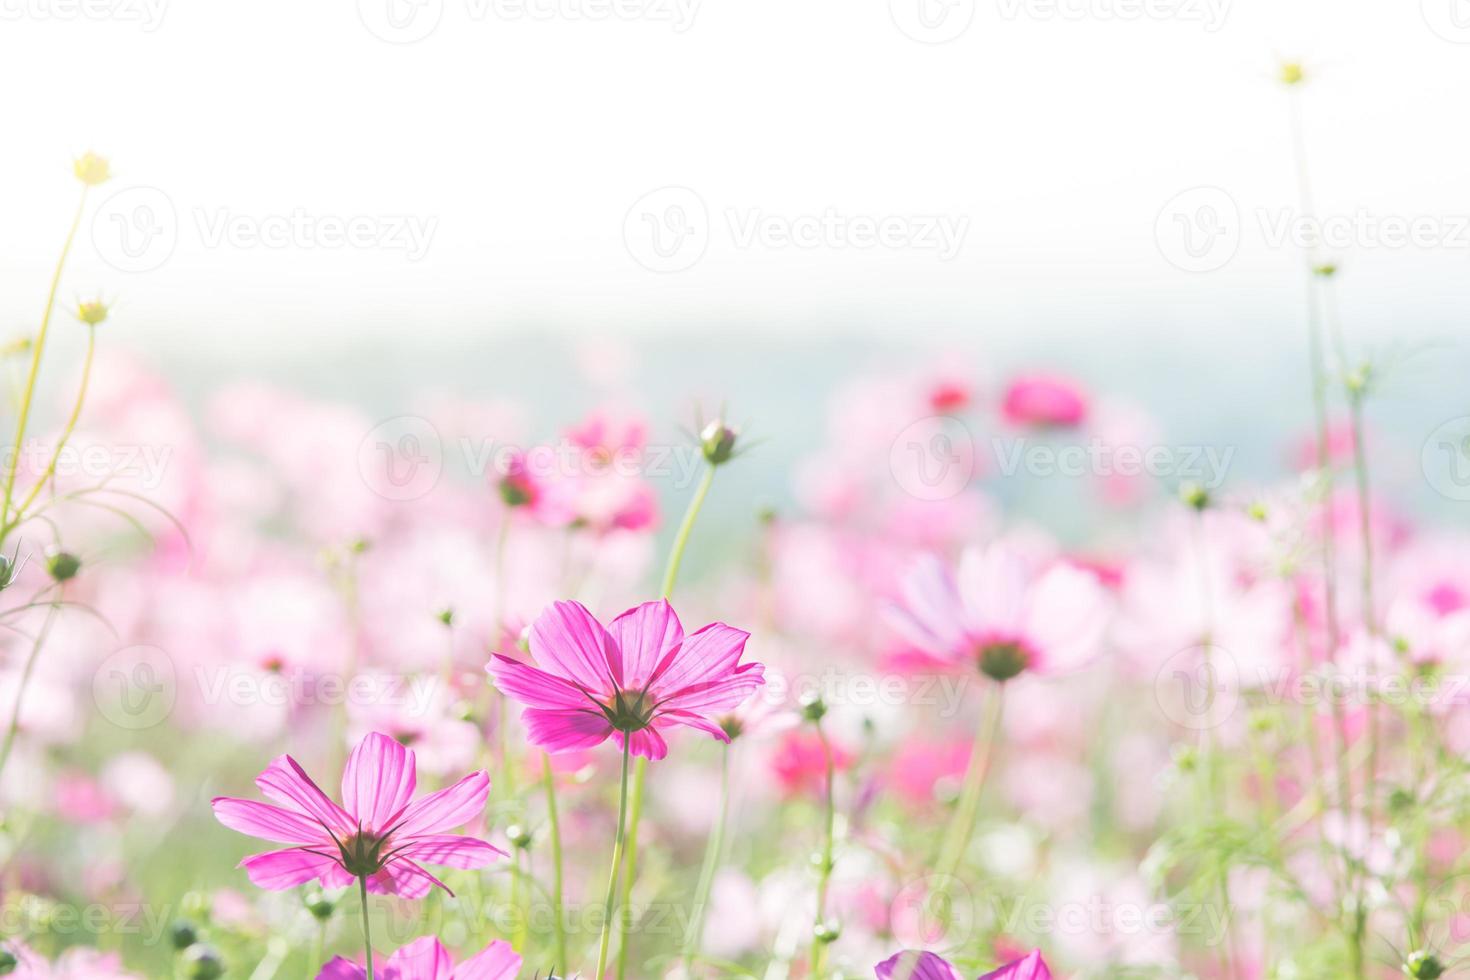 mise au point douce et sélective du cosmos, fleur floue pour le fond, plantes colorées photo